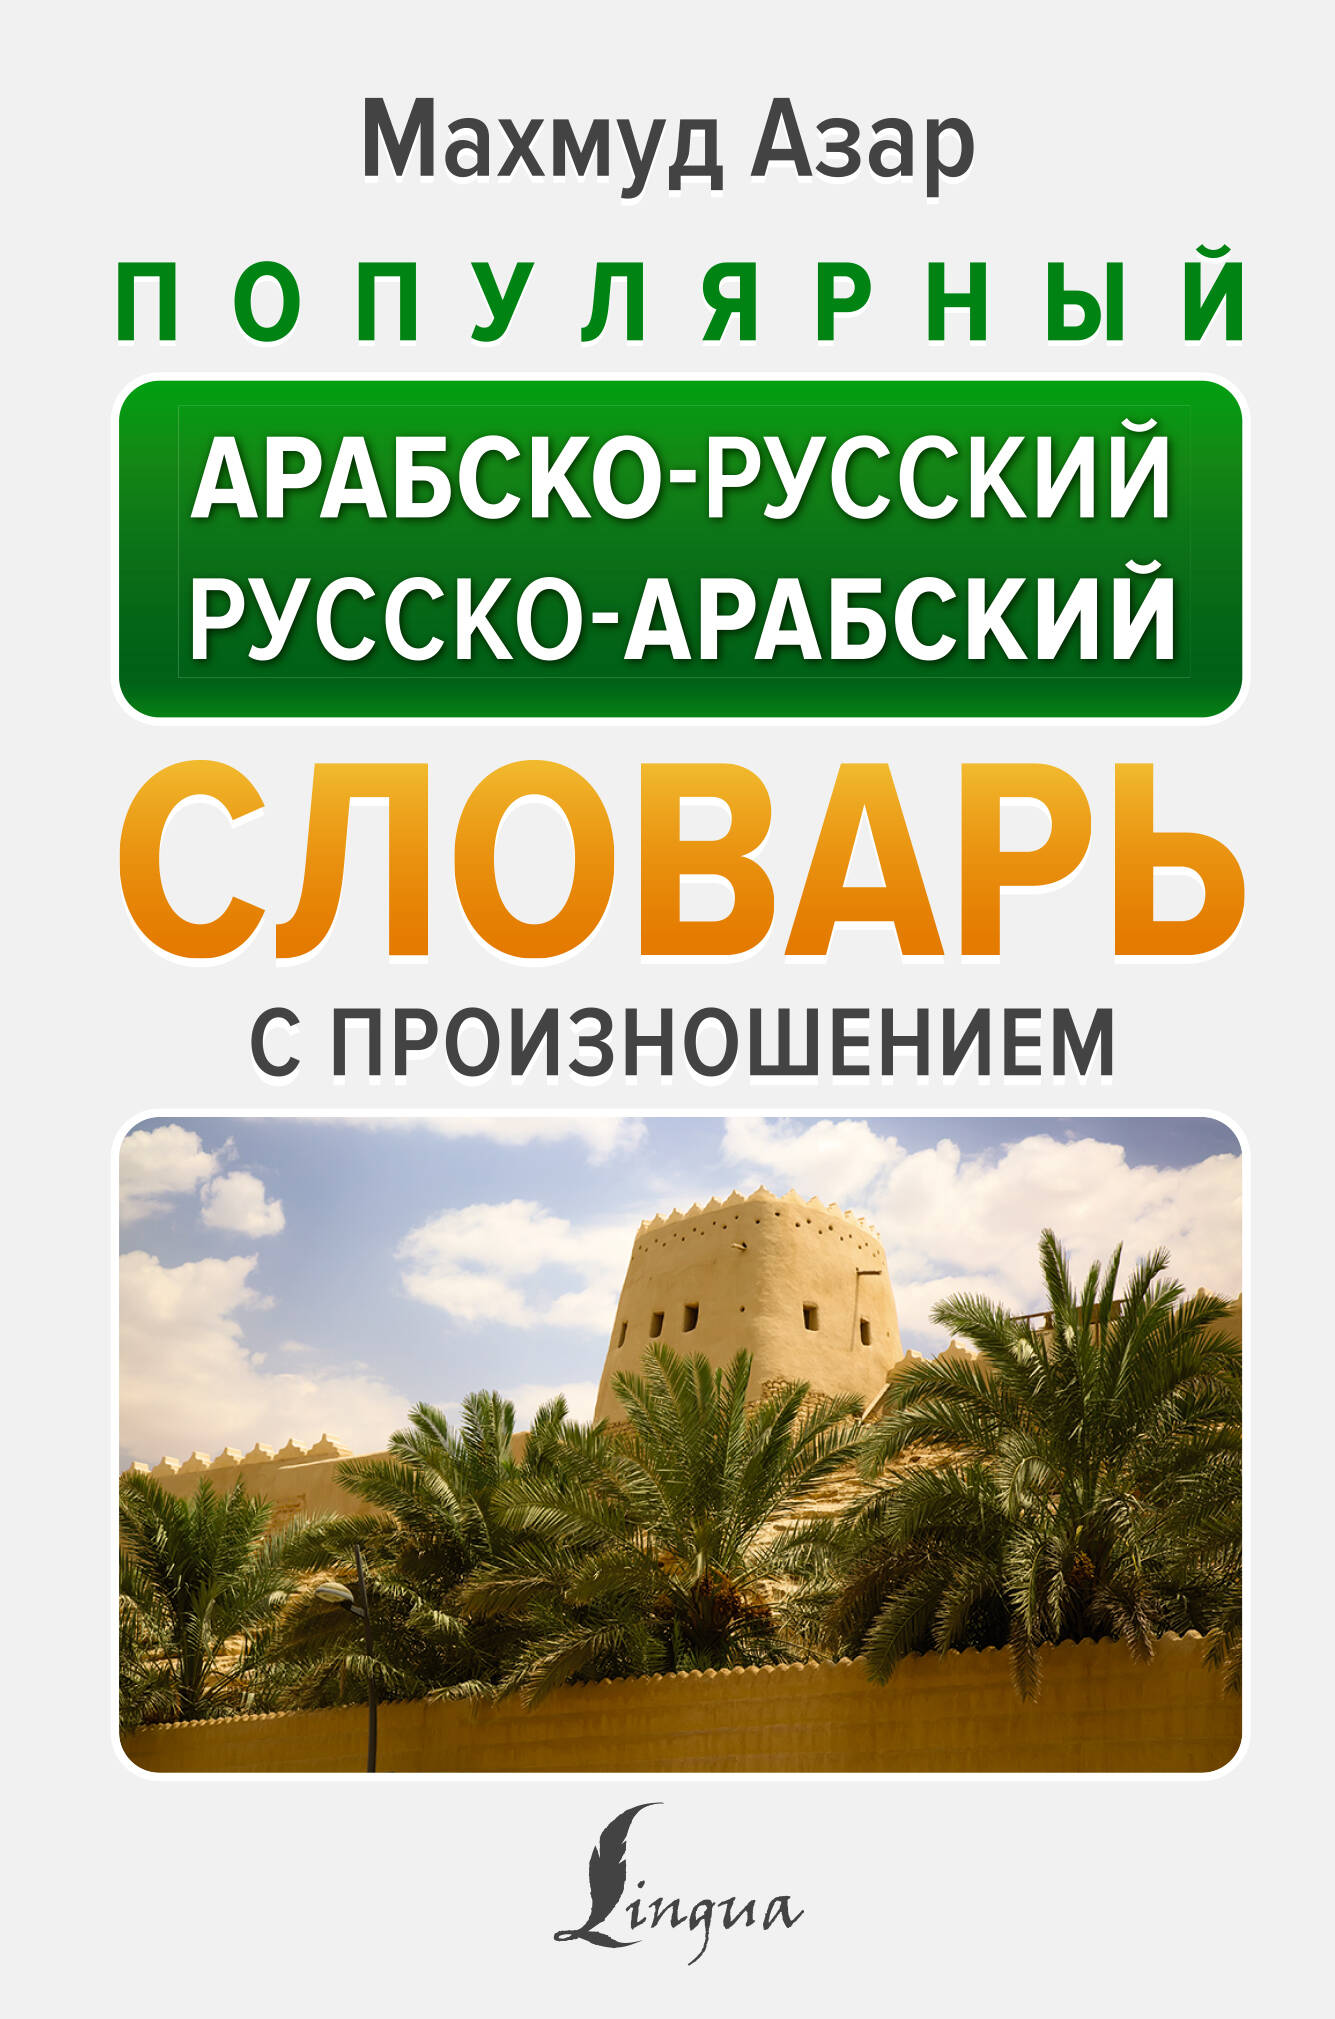 Популярный арабско-русский русско-арабский словарь с произношением азар махмуд арабский с нуля